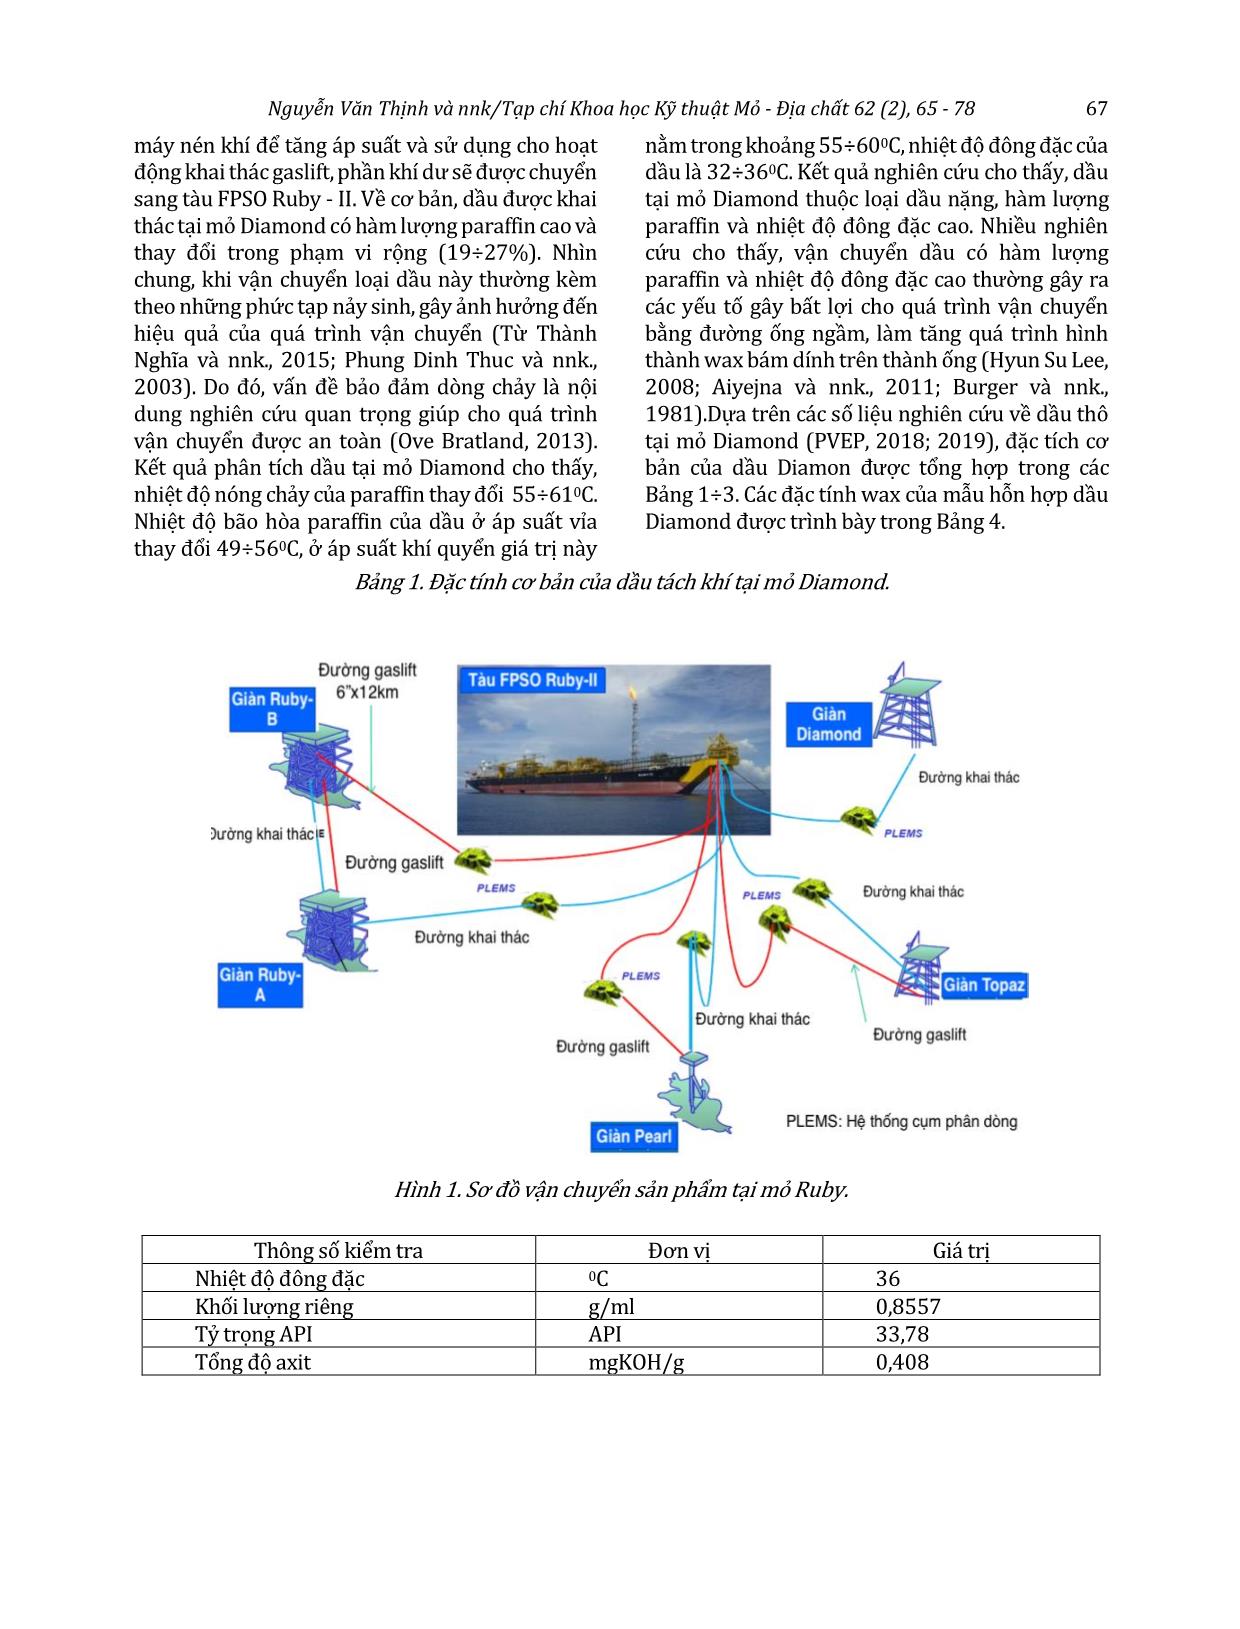 Nghiên cứu giải pháp đảm bảo dòng chảy cho tuyến ống vận chuyển hỗn hợp dầu khí từ giàn Diamond về tàu FPSO Ruby - II trang 3